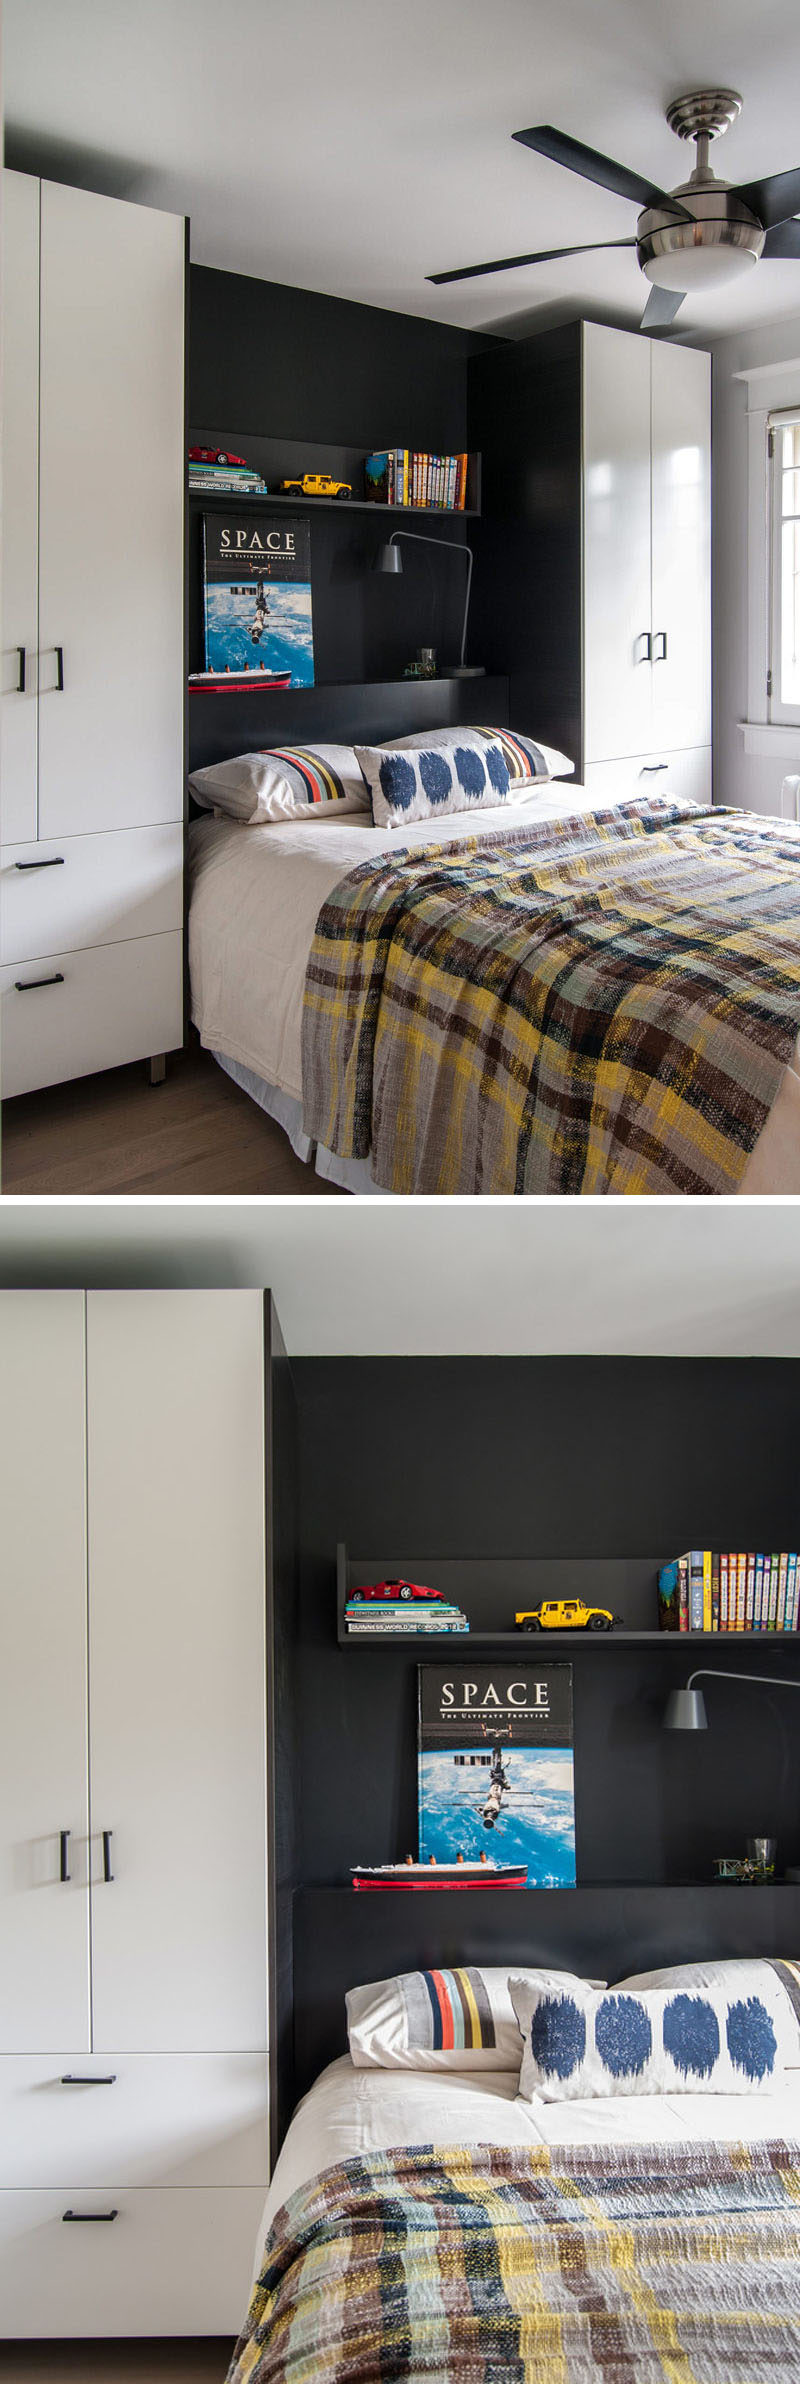 Идеи дизайна спальни - 8 способов создать идеальное окружение кровати с хранением // Определите зону для сна - используйте жирный цвет или другой материал, чем тот, который использовался в остальных шкафах, выделяет вашу кровать и кладет и добавляет цвет и текстуру в вашу комнату.